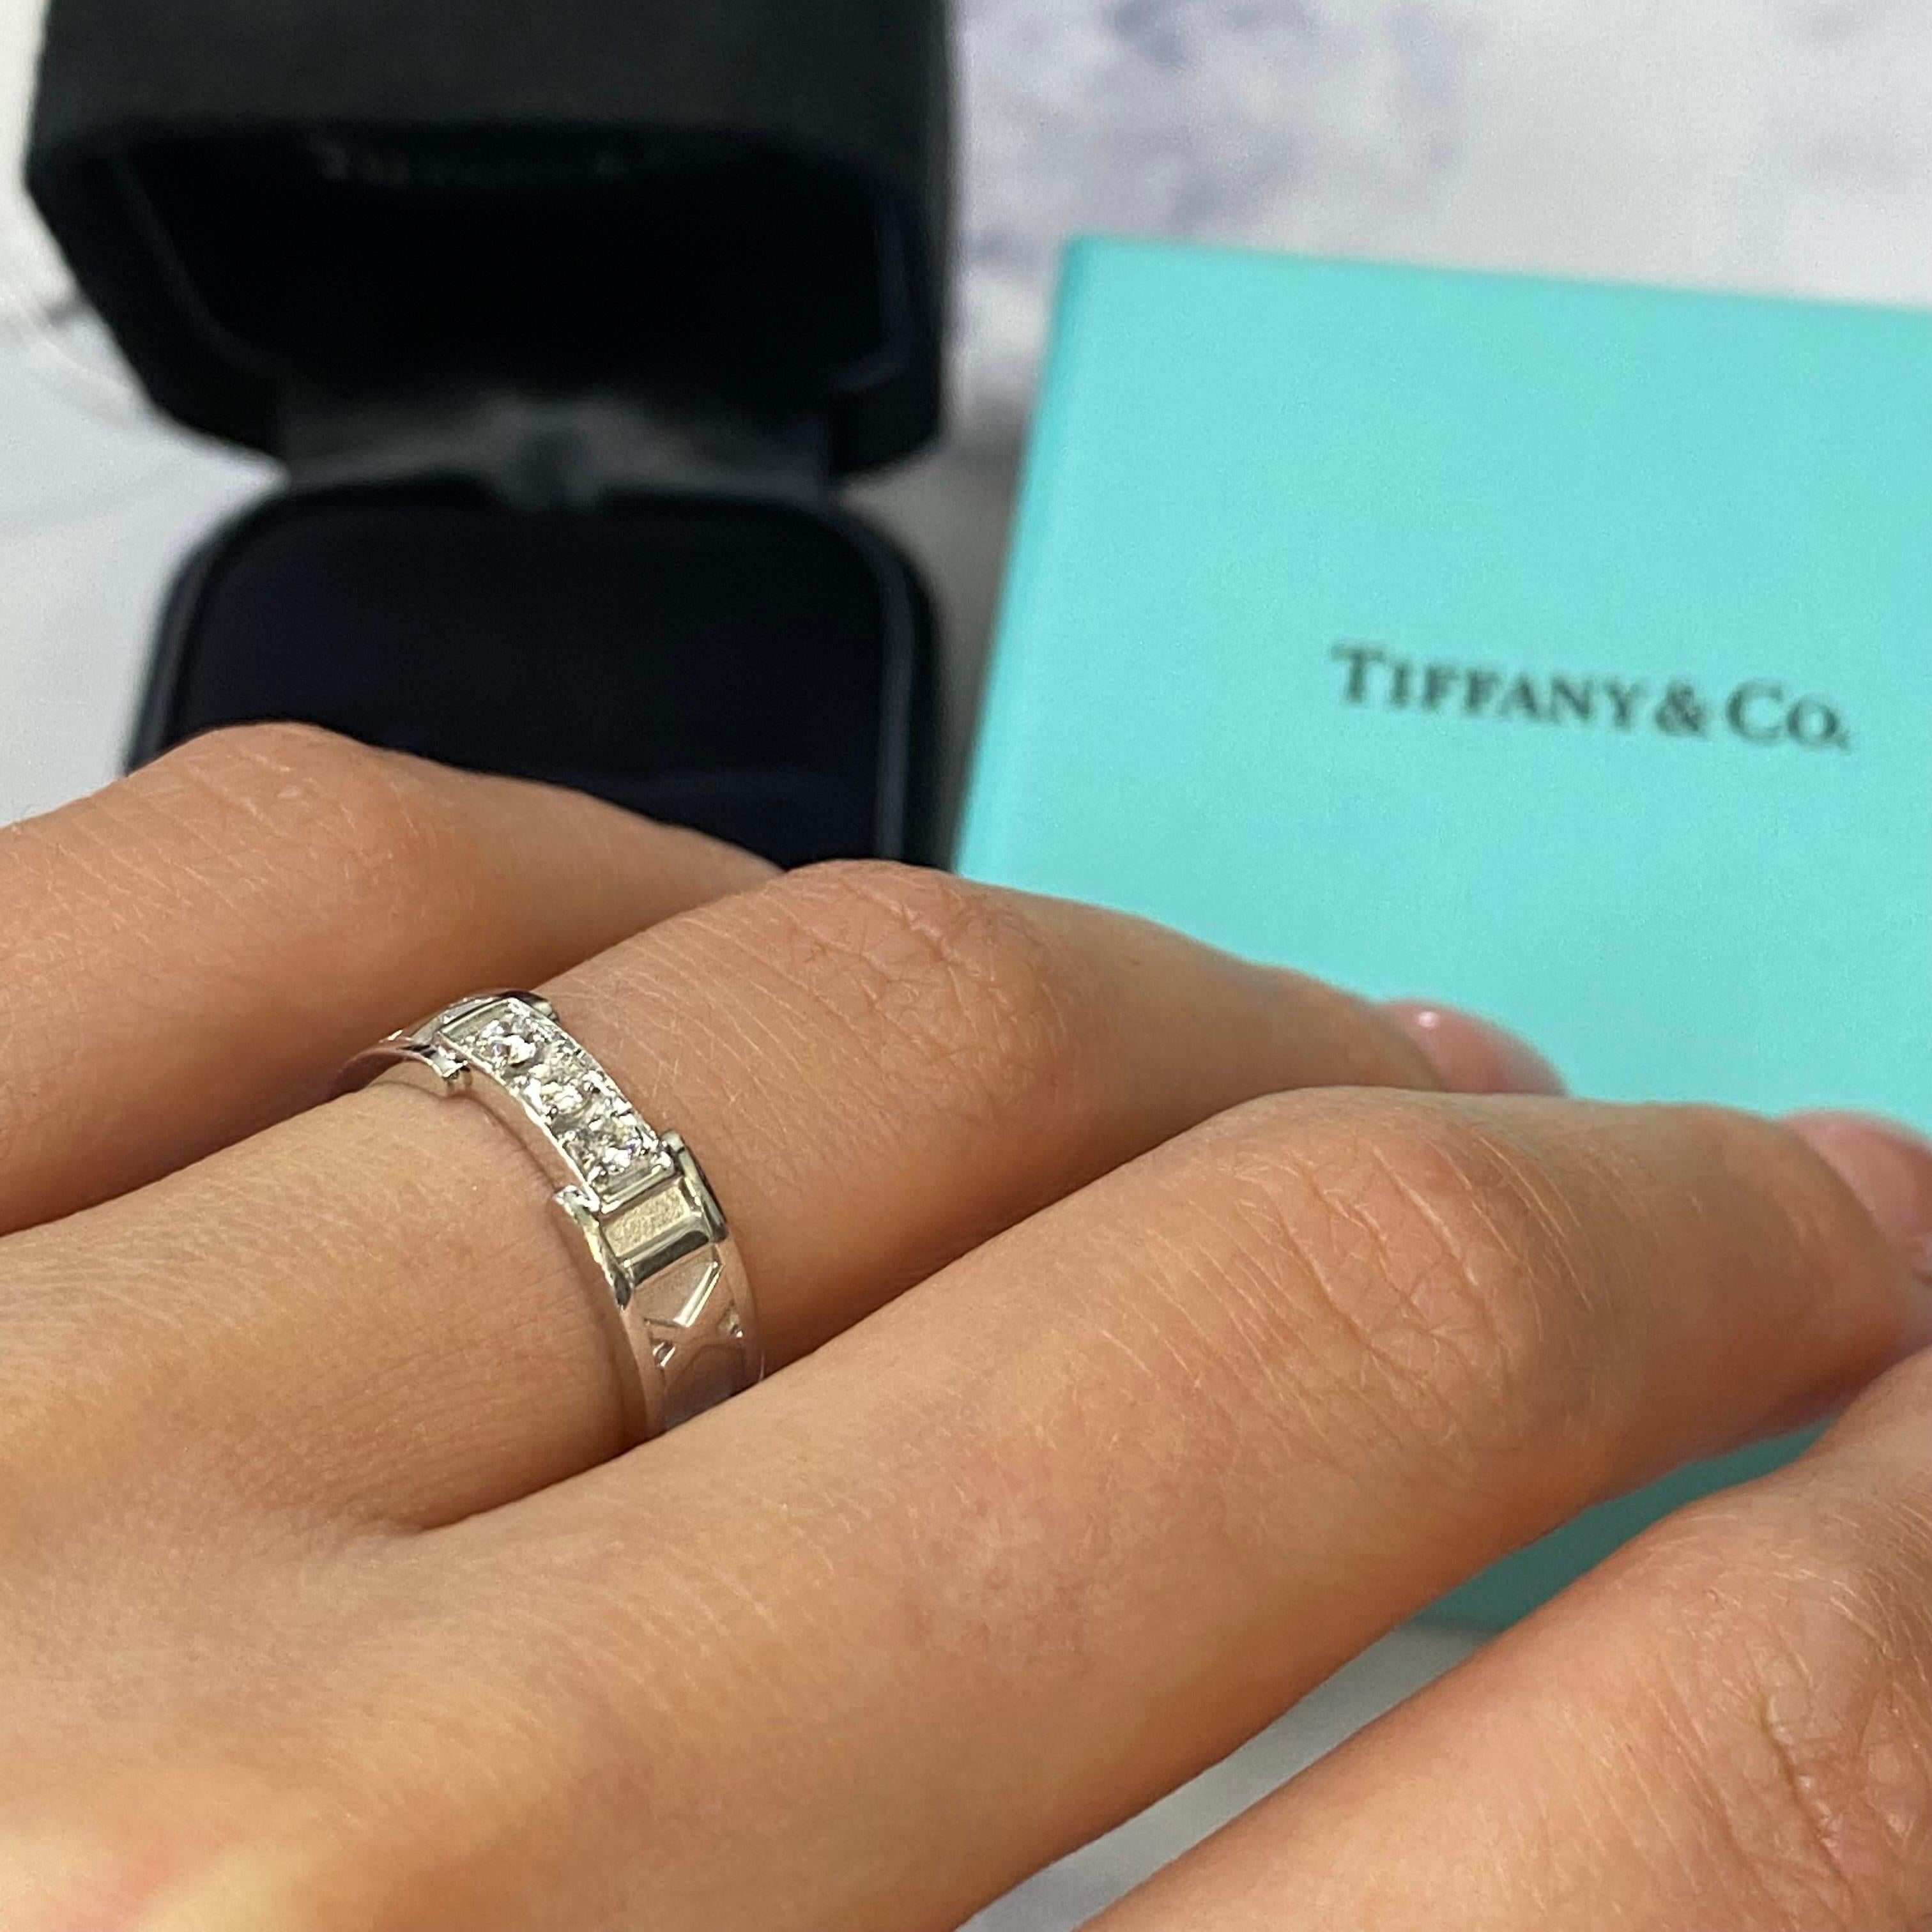 Women's Tiffany & Co. Atlas 3 Diamond Ring 18K White Gold 0.15cttw For Sale